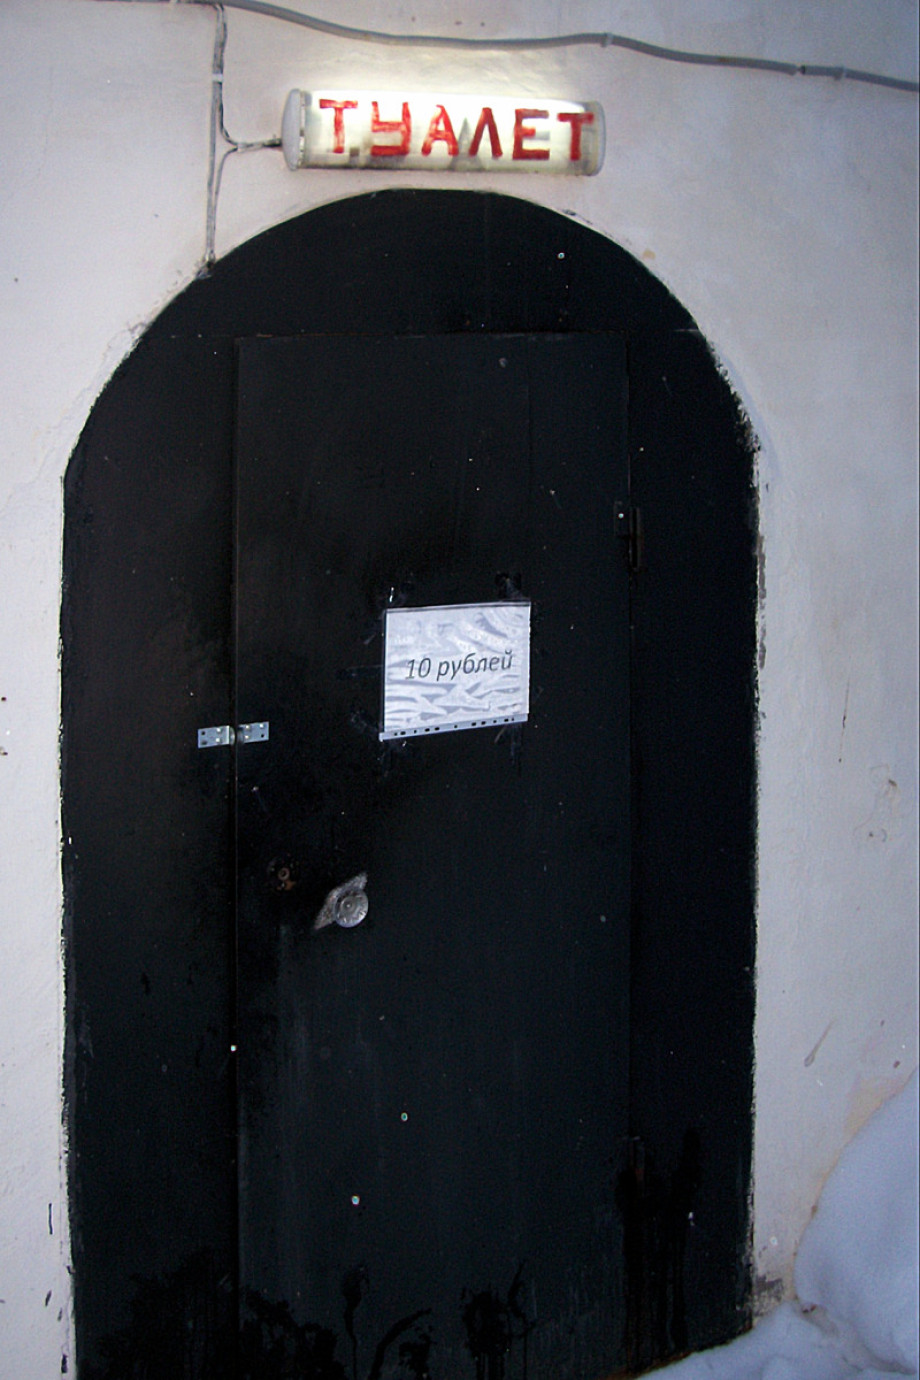 Публичный туалет в тихвинском монастыре. Изображение 1